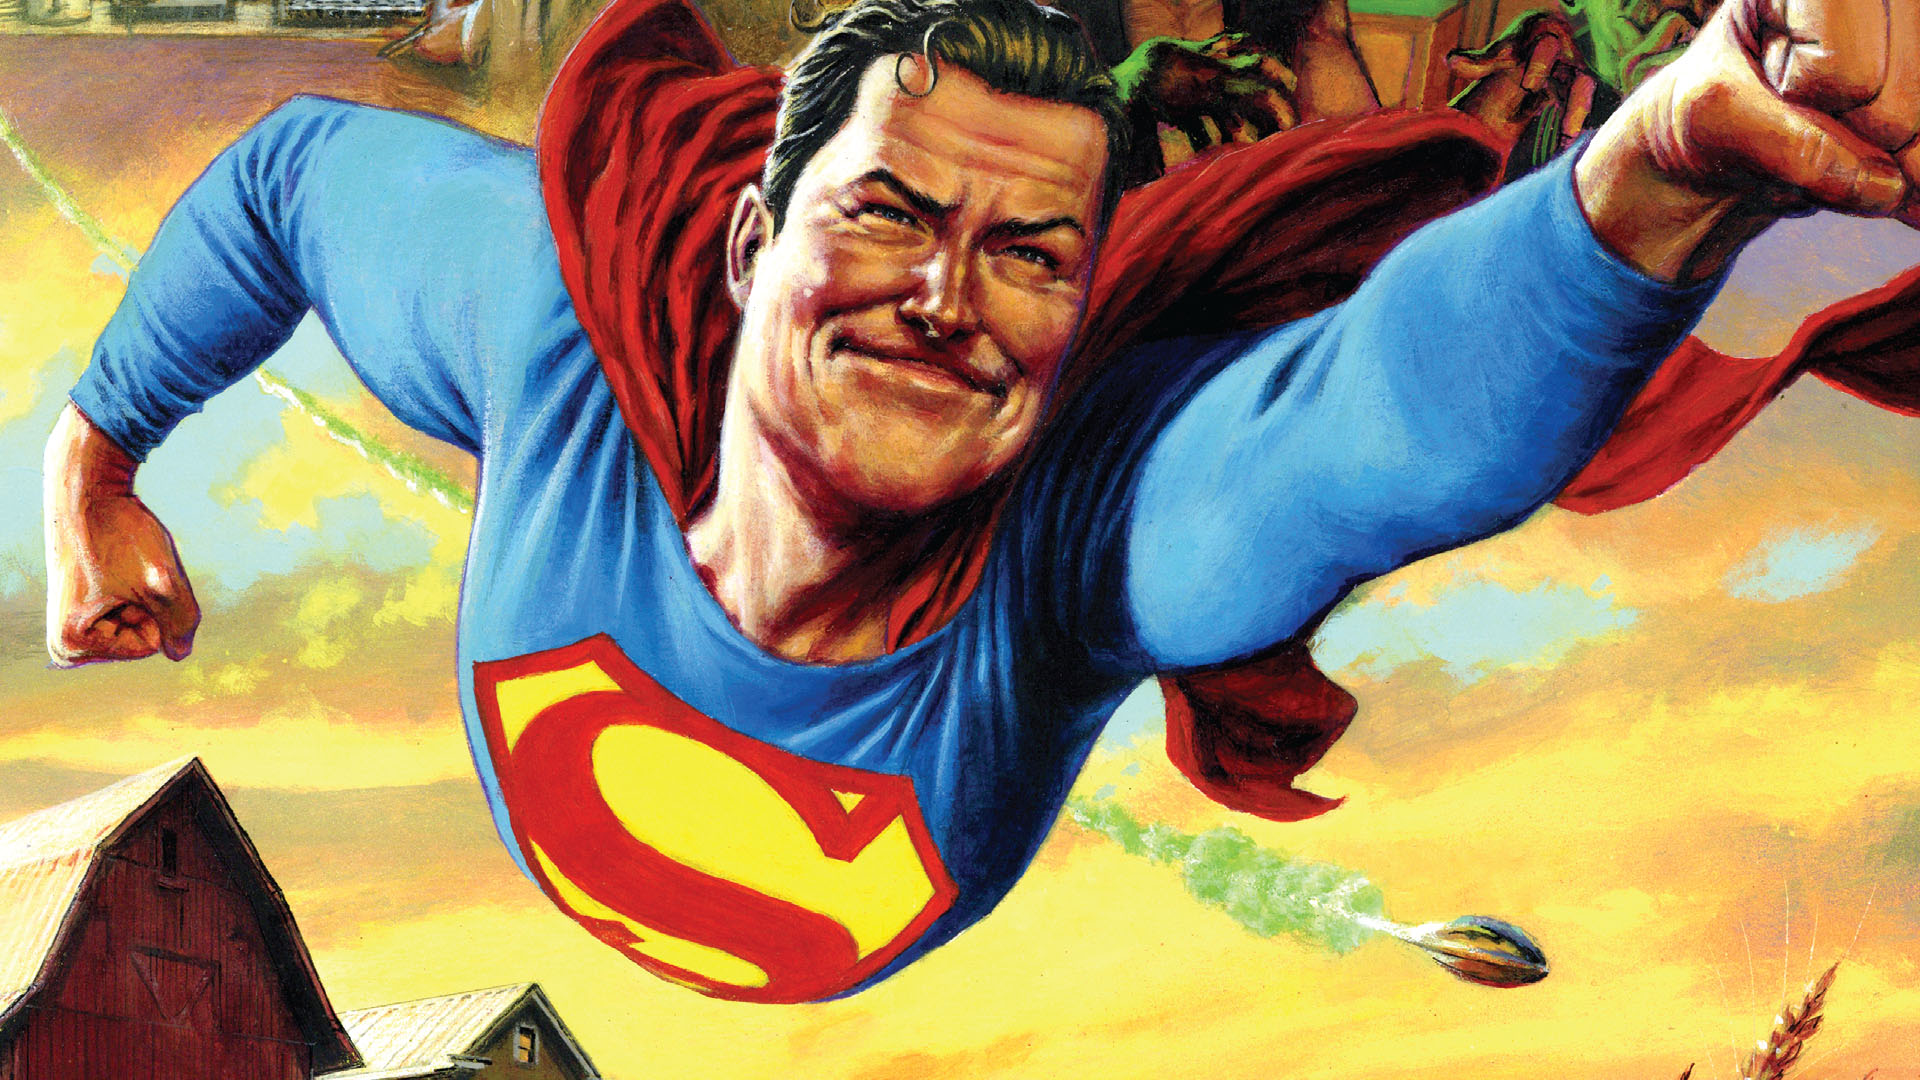 Action Comics #1047 - Superman eposzi Háborús világforradalma után az Acélember visszatért a Földre, és erősebb, mint valaha!